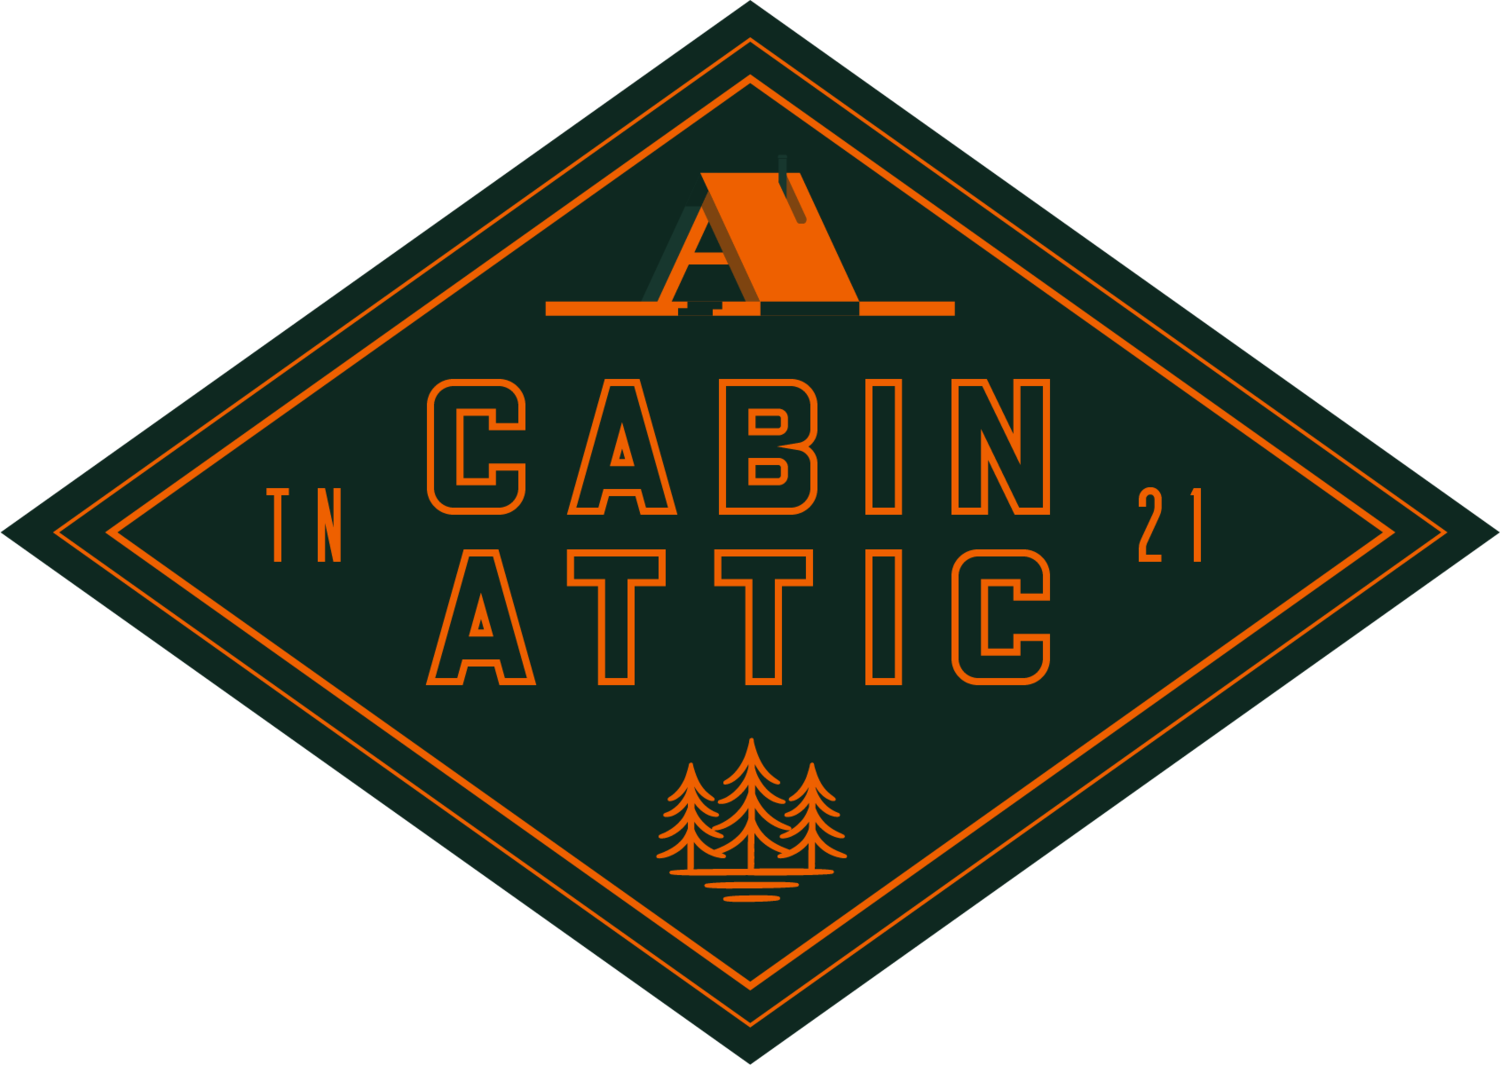 Cabin Attic Burgers